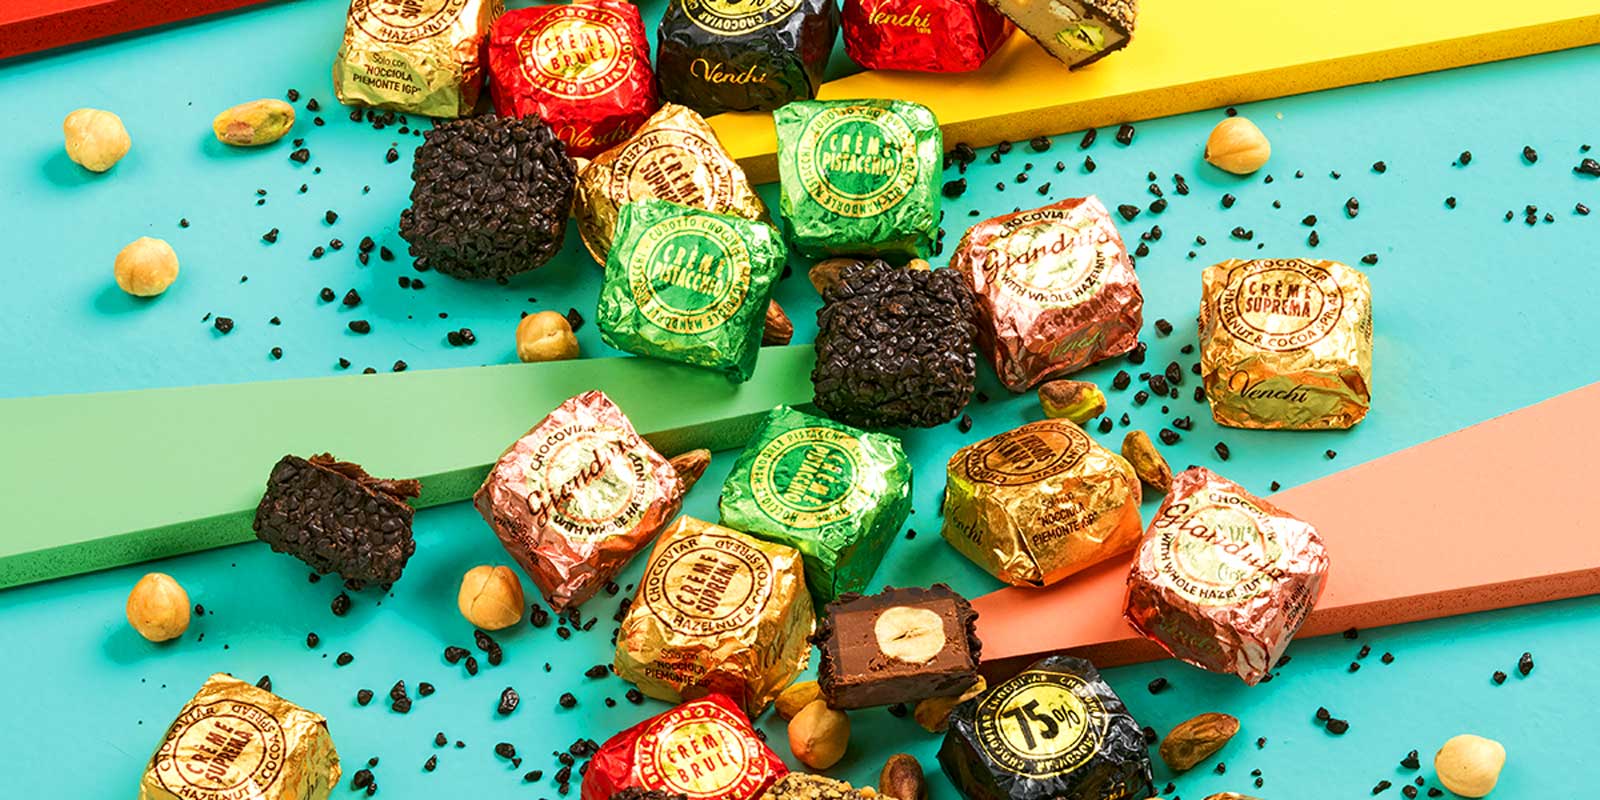 Venchi cokolade i praline iz Pijemonta Ukusni, domaci i prirodni recepti osmisljeni da vam pomognu da uzivate.
Od 1878. svakodnevno nudimo trenutke radosti u savrsenom italijanskom stilu, mislimo na vasu dobrobit.